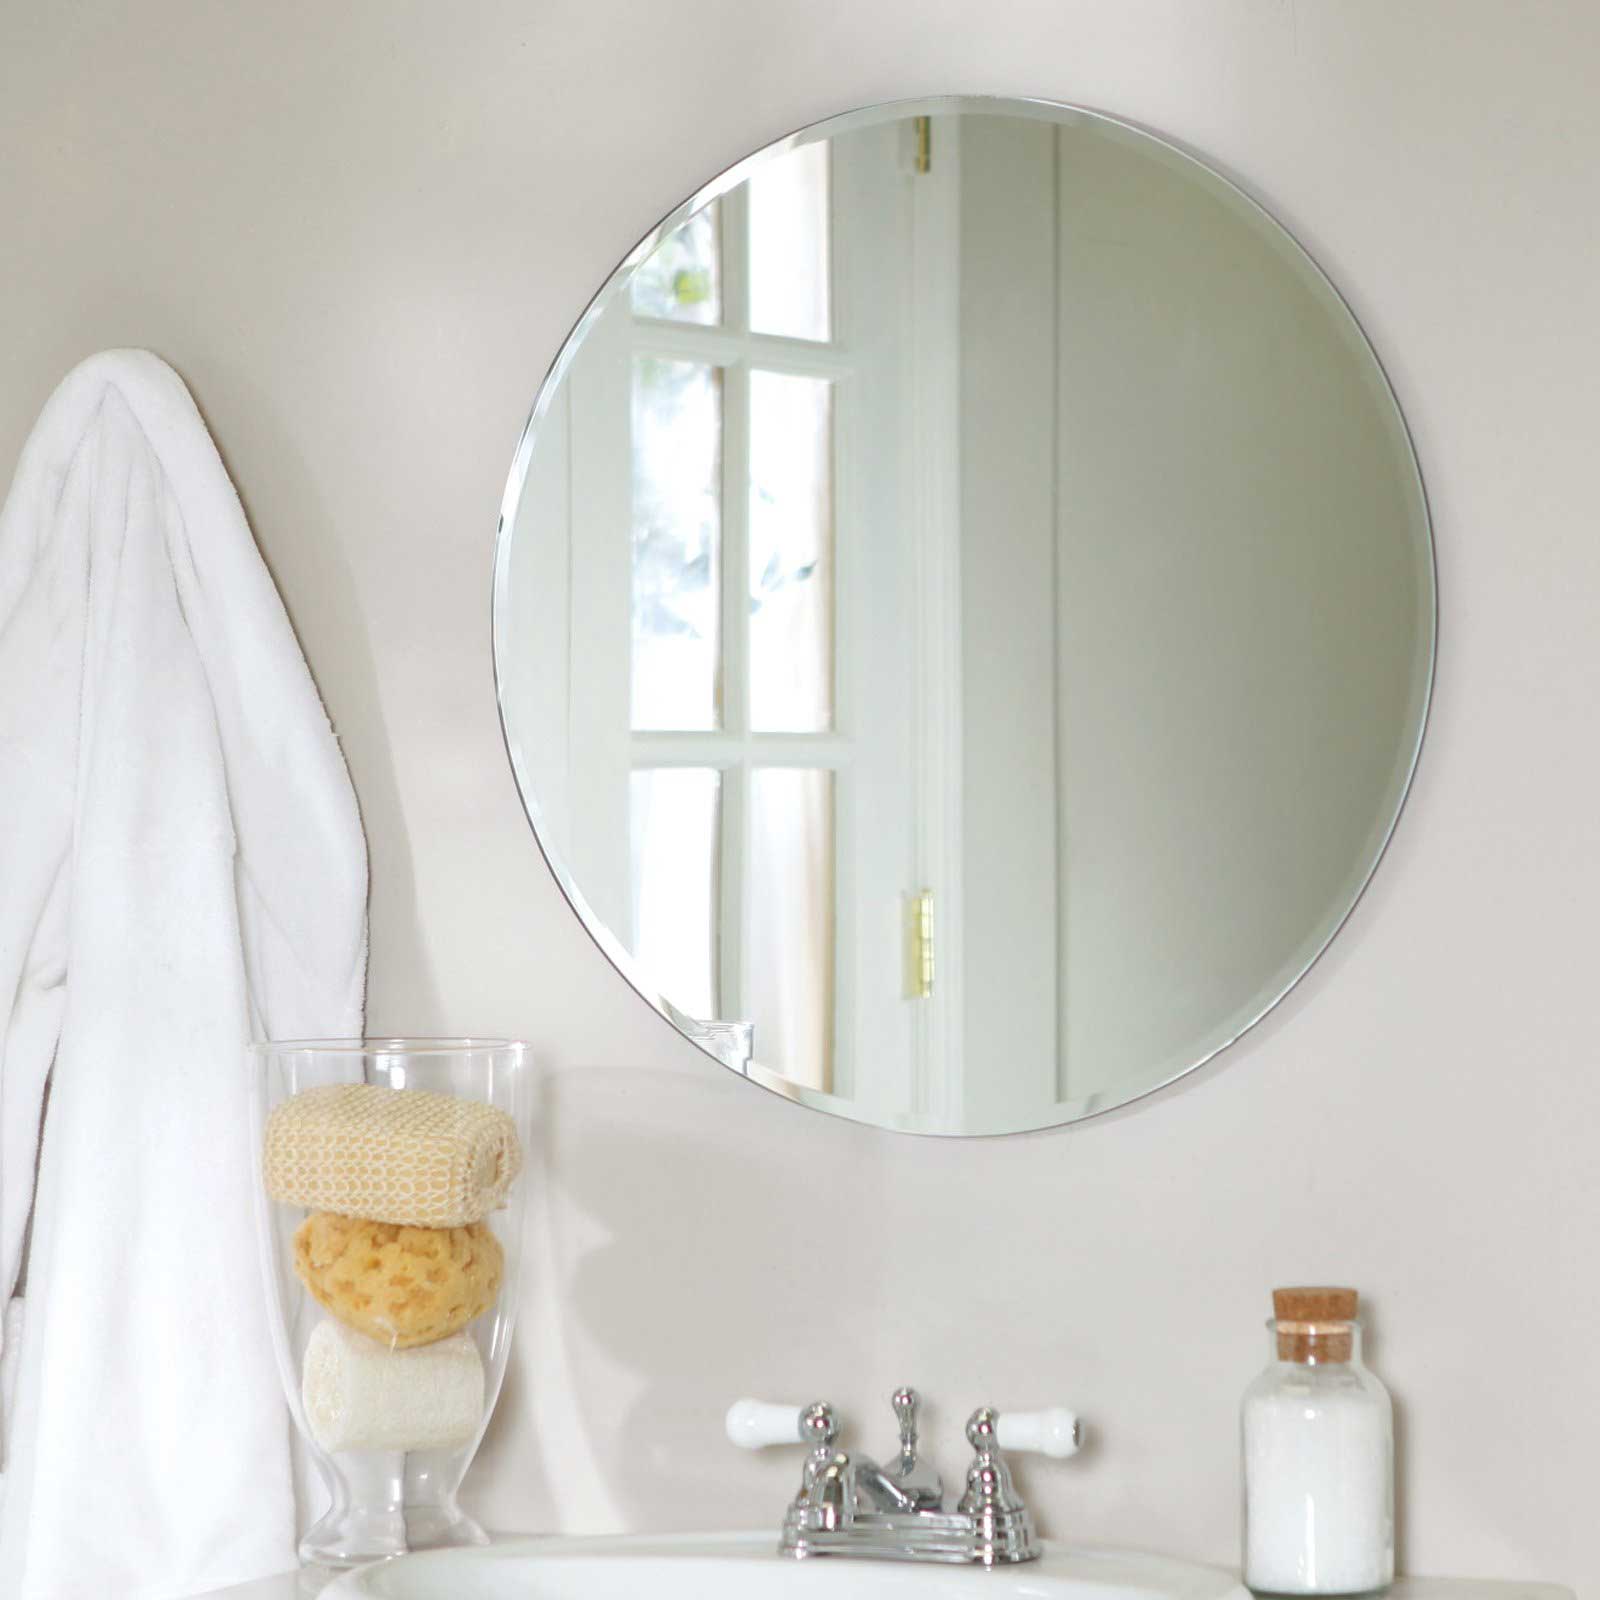 style-minimaliste-shabby-miroirs-de-salle-de-bain-decoration-meubles-quebec-canada.png